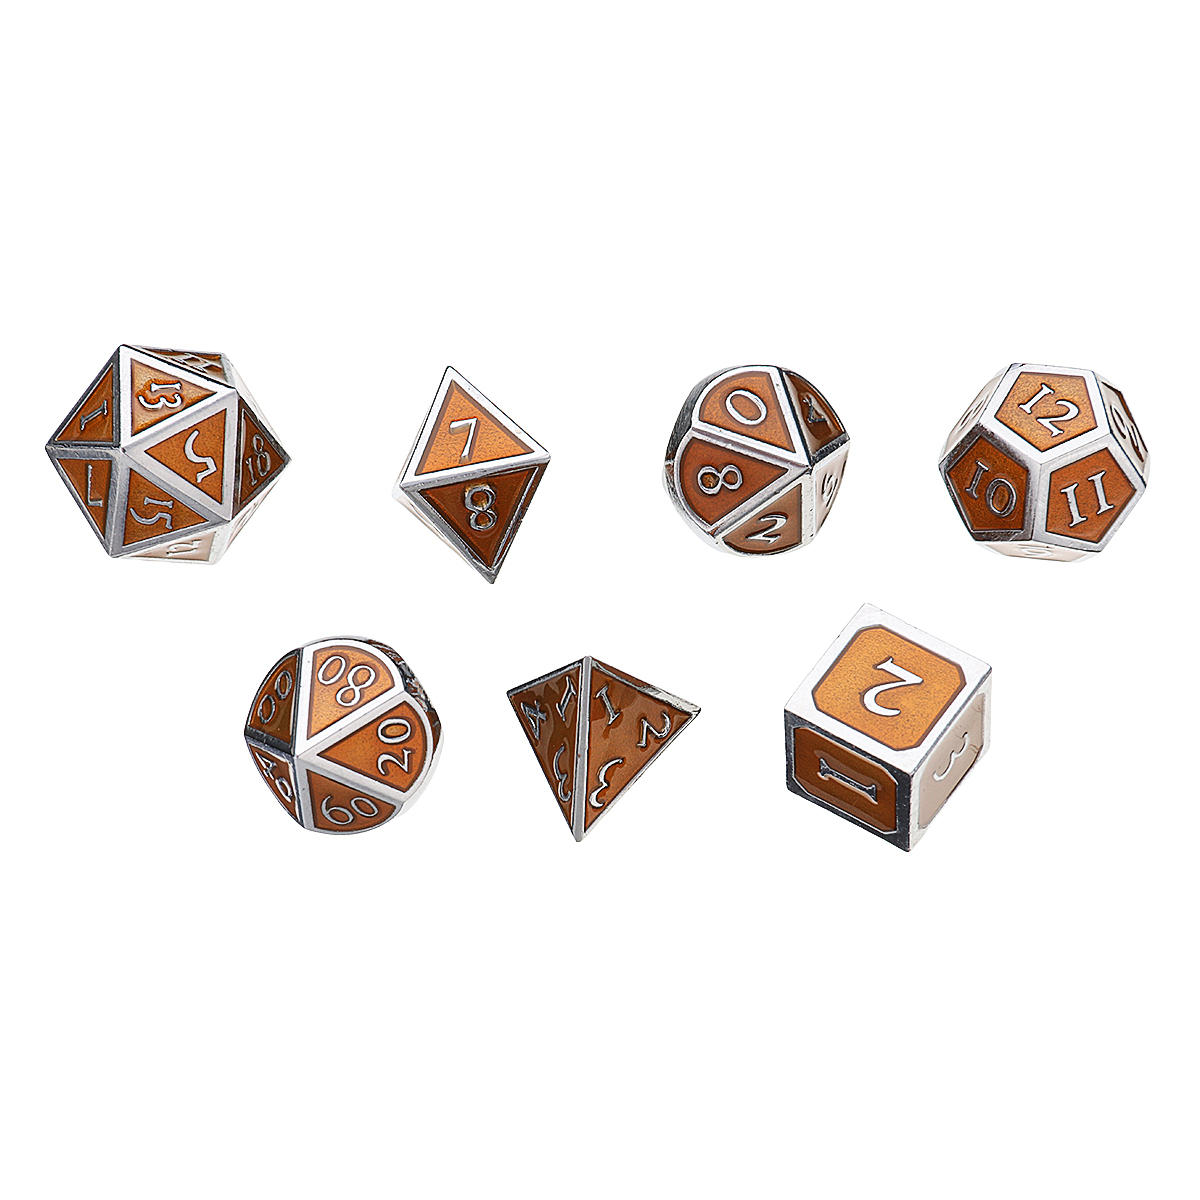 7 stuks antieke metalen polyhedral dobbelstenen met zak koperkleur voor kerkers draken spel